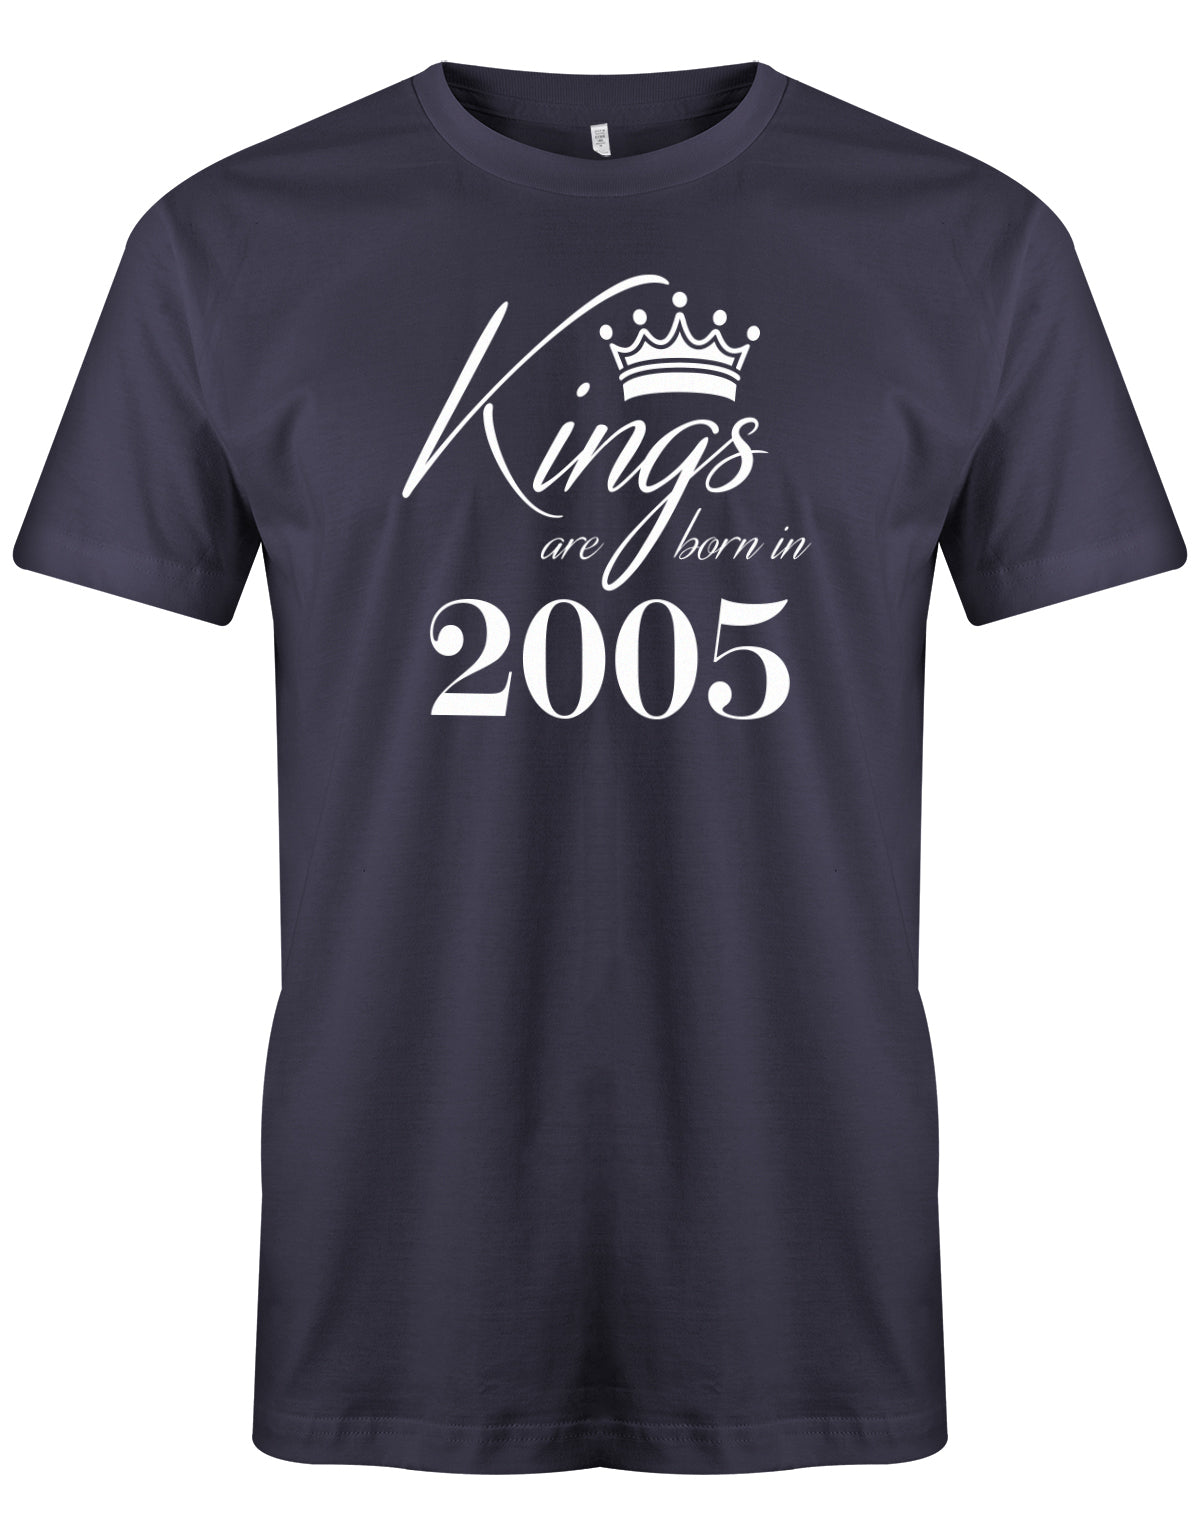 Cooles T-Shirt zum 18. Geburtstag für Jungen. Bedruckt mit: Kings areborn in 2005 - Könige werden 2005 geboren Das T Shirt 18 Geburtstag Junge Lustig ist ein tolles Geschenk für alle 18 Jährigen. Geschenk zum 18 geburtstag Jungen ✓ 2005 geburtstag Junge ✓ 18 Geburtstag tshirt ✓ shirt geburtstag 18 Navy